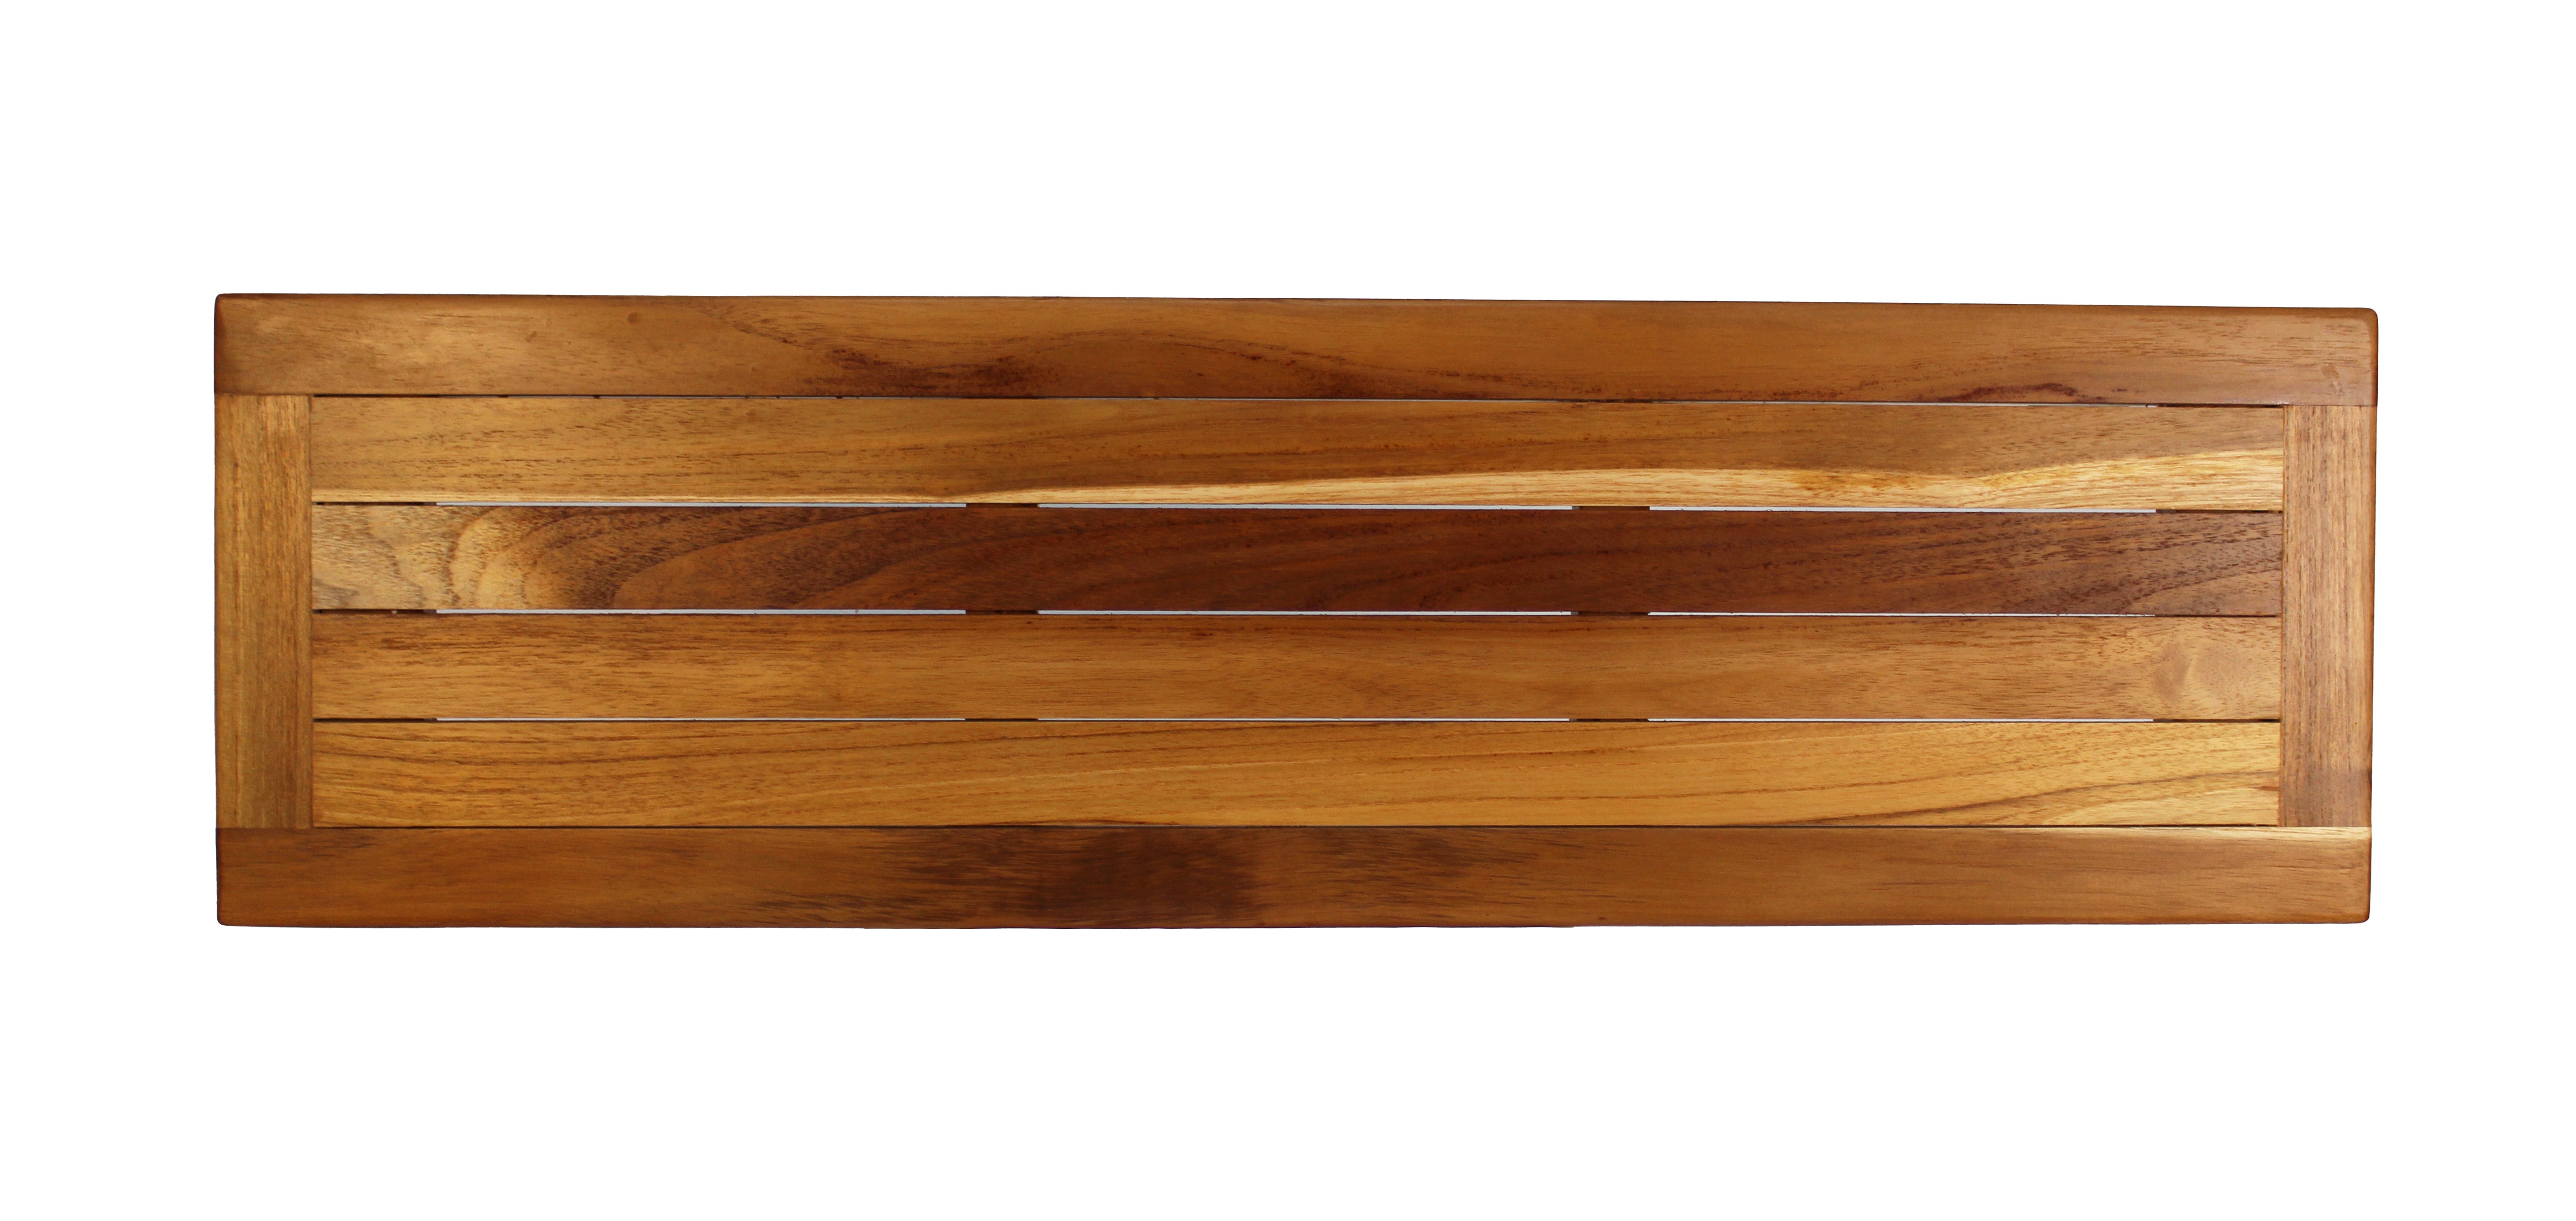 Eleganto® 34” Teak Bath Tray and Seat in EarthyTeak® Finish - DecoTeak® Eleganto® 23”W Teak Floor Mat in a Woodland Brown Finish